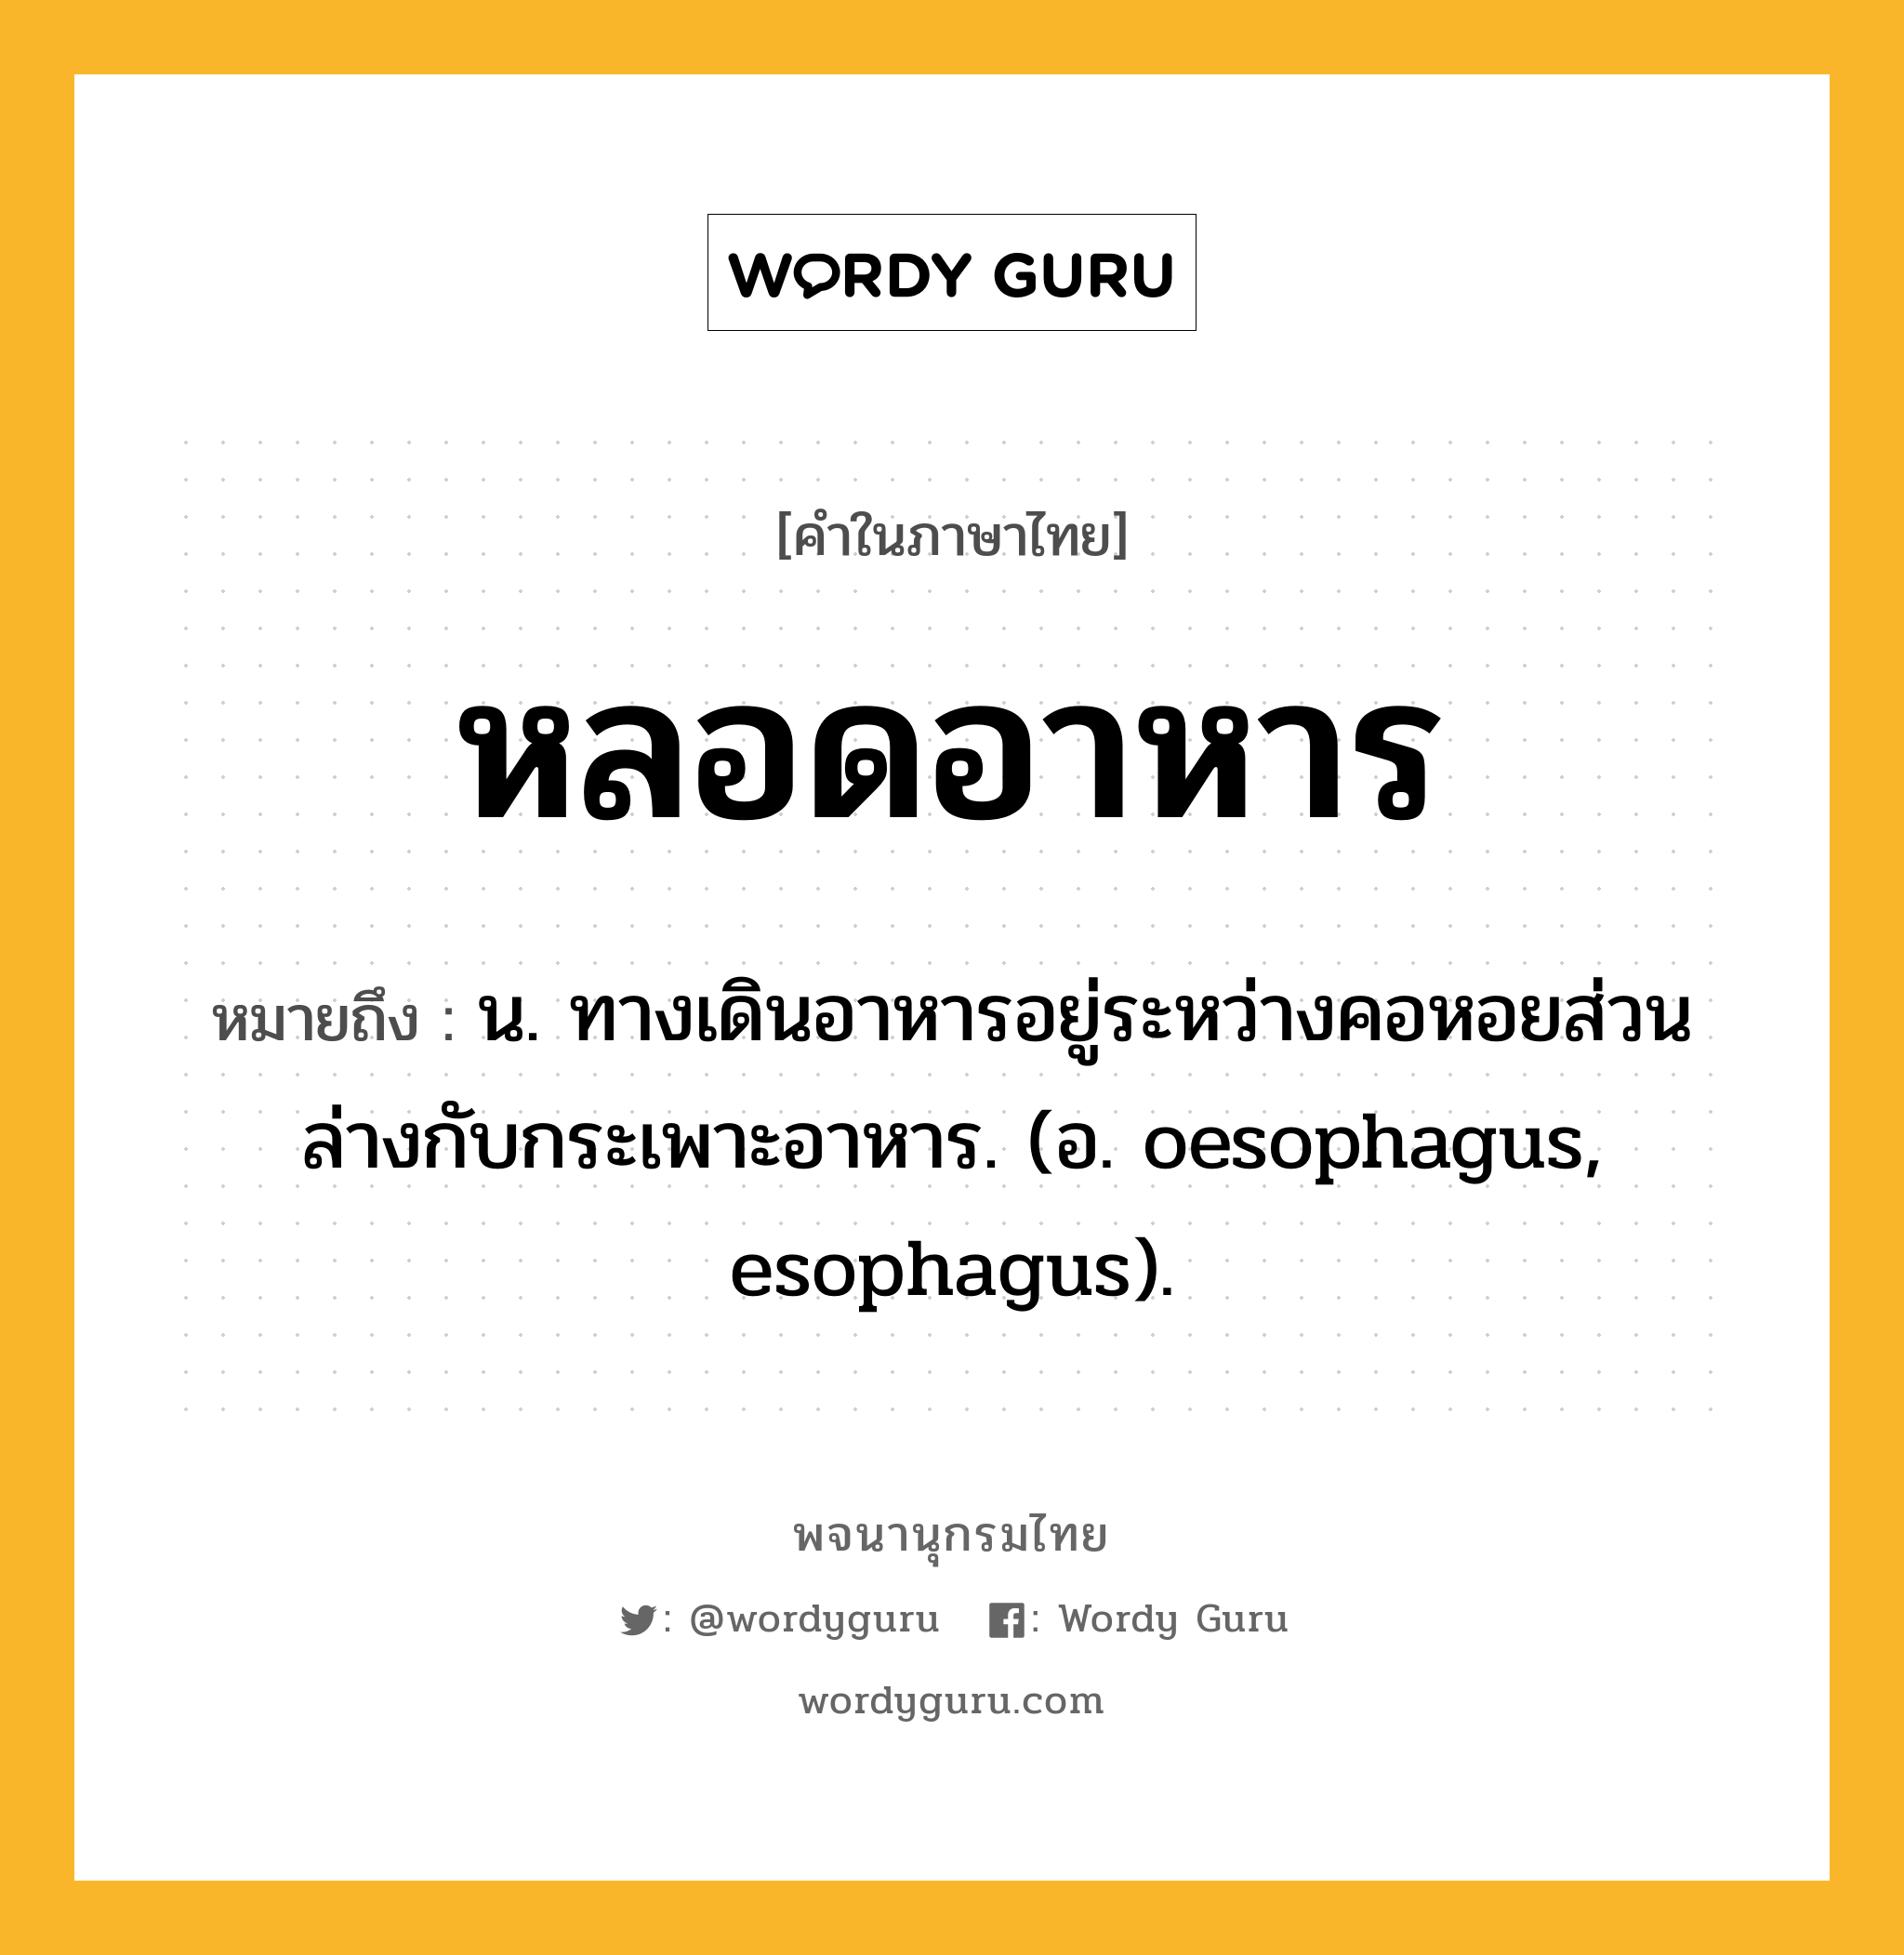 หลอดอาหาร ความหมาย หมายถึงอะไร?, คำในภาษาไทย หลอดอาหาร หมายถึง น. ทางเดินอาหารอยู่ระหว่างคอหอยส่วนล่างกับกระเพาะอาหาร. (อ. oesophagus, esophagus).